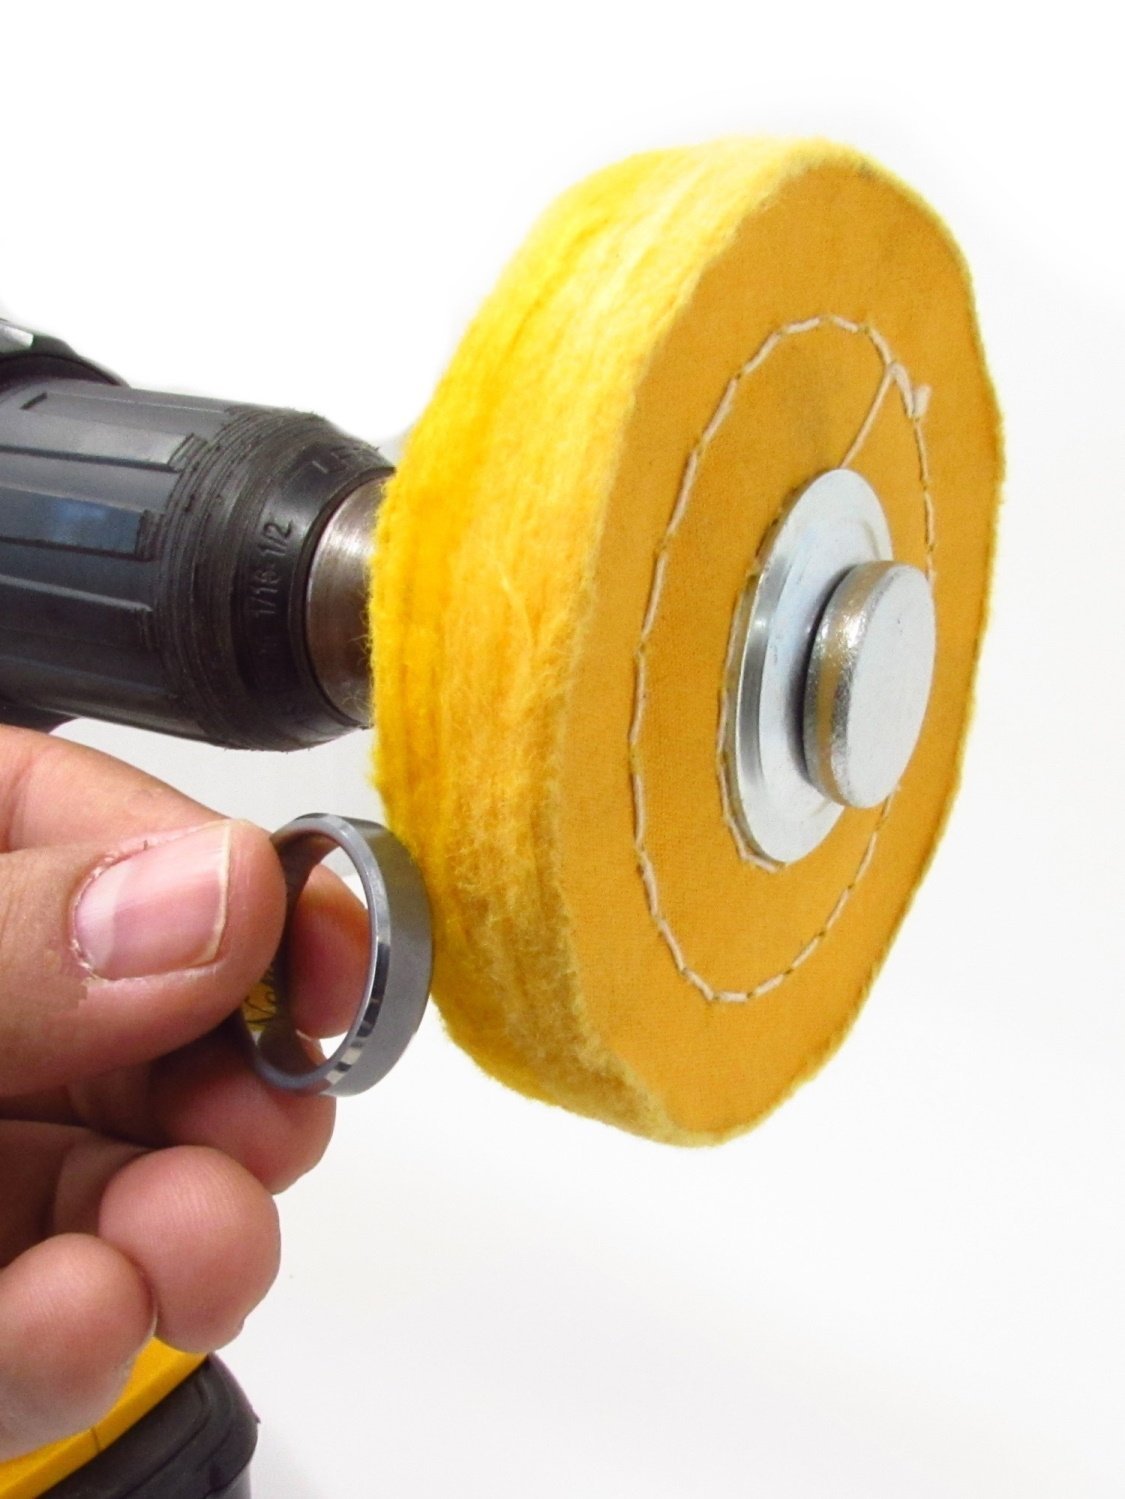 Paquete de 2 ruedas pulidoras cosidas en espiral de 4 pulgadas, orificio de eje de 1/2 pulgada, amarillo, firme